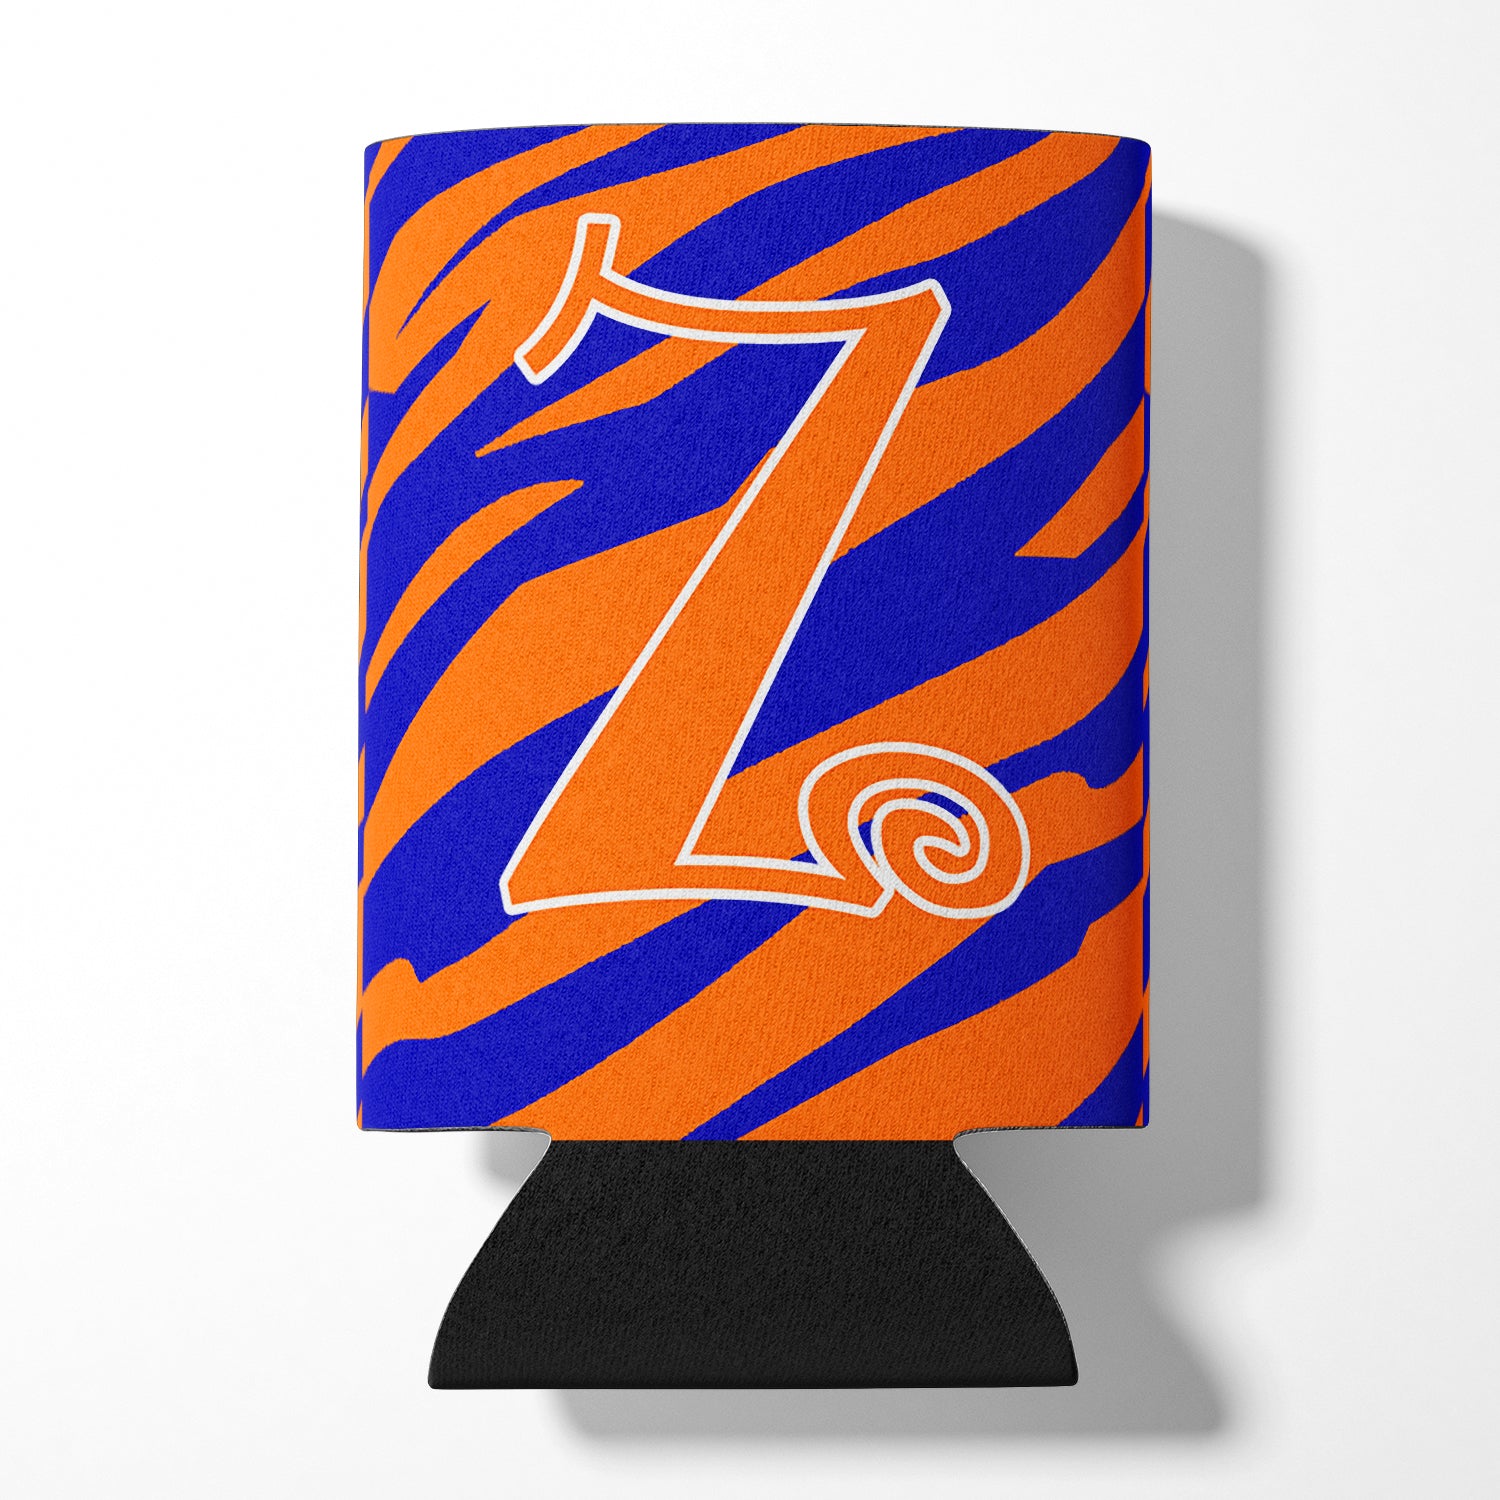 Monogramme initial de la lettre Z - Tiger Stripe Blue and Orange Can Beverage Insulator Hugger